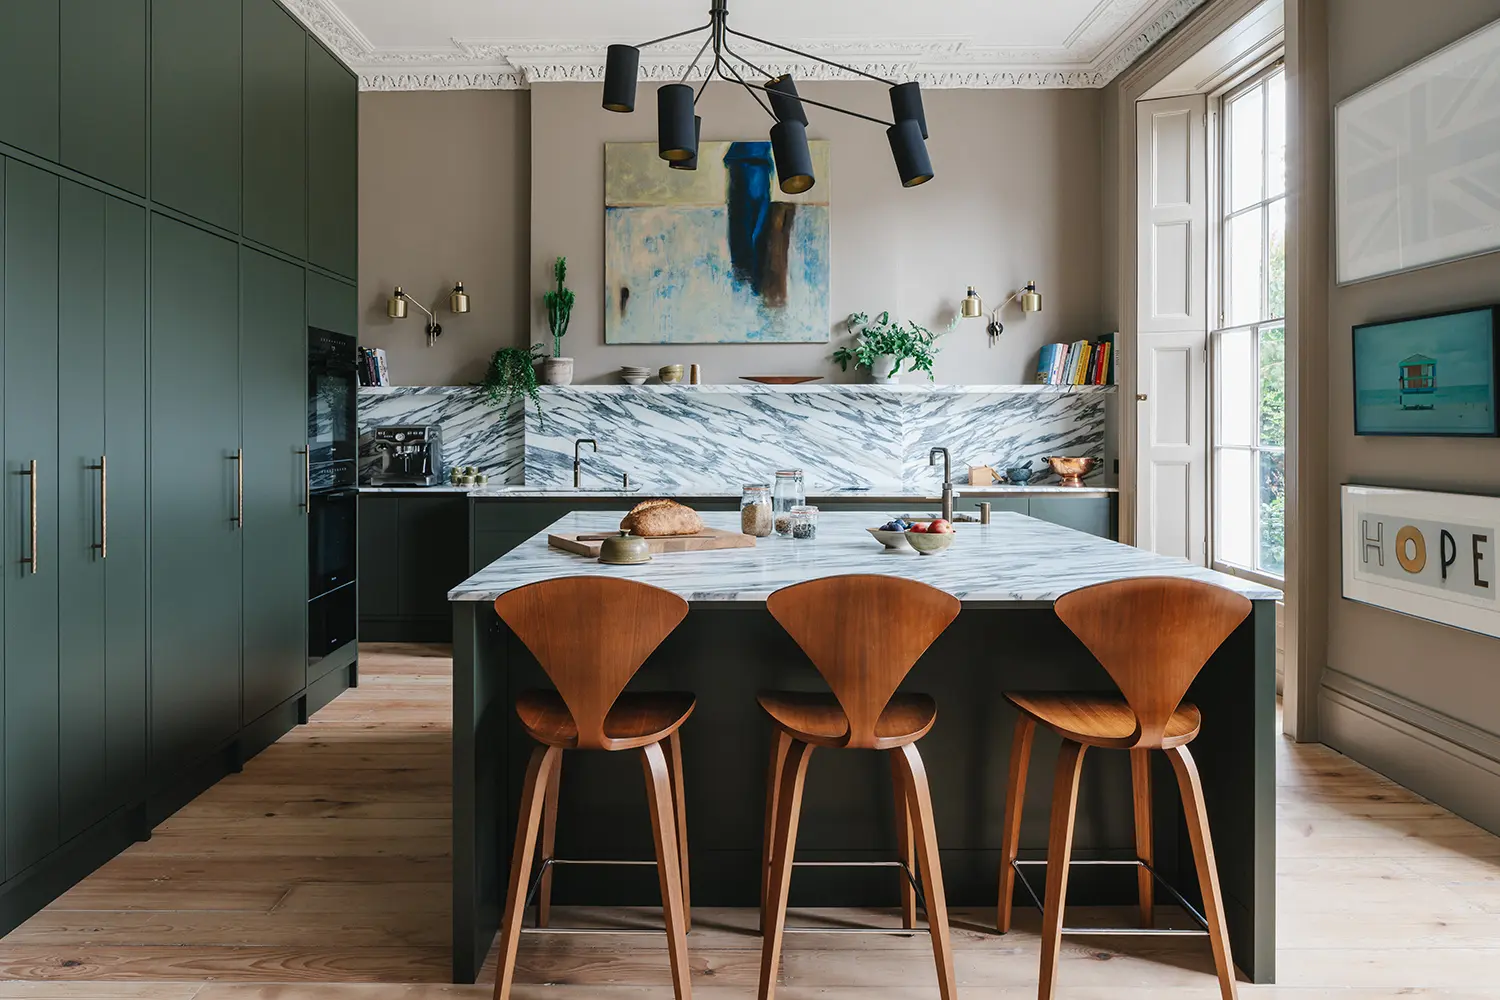 Pembroke Bristol Grade II Listed Regency House interior design kitchen design